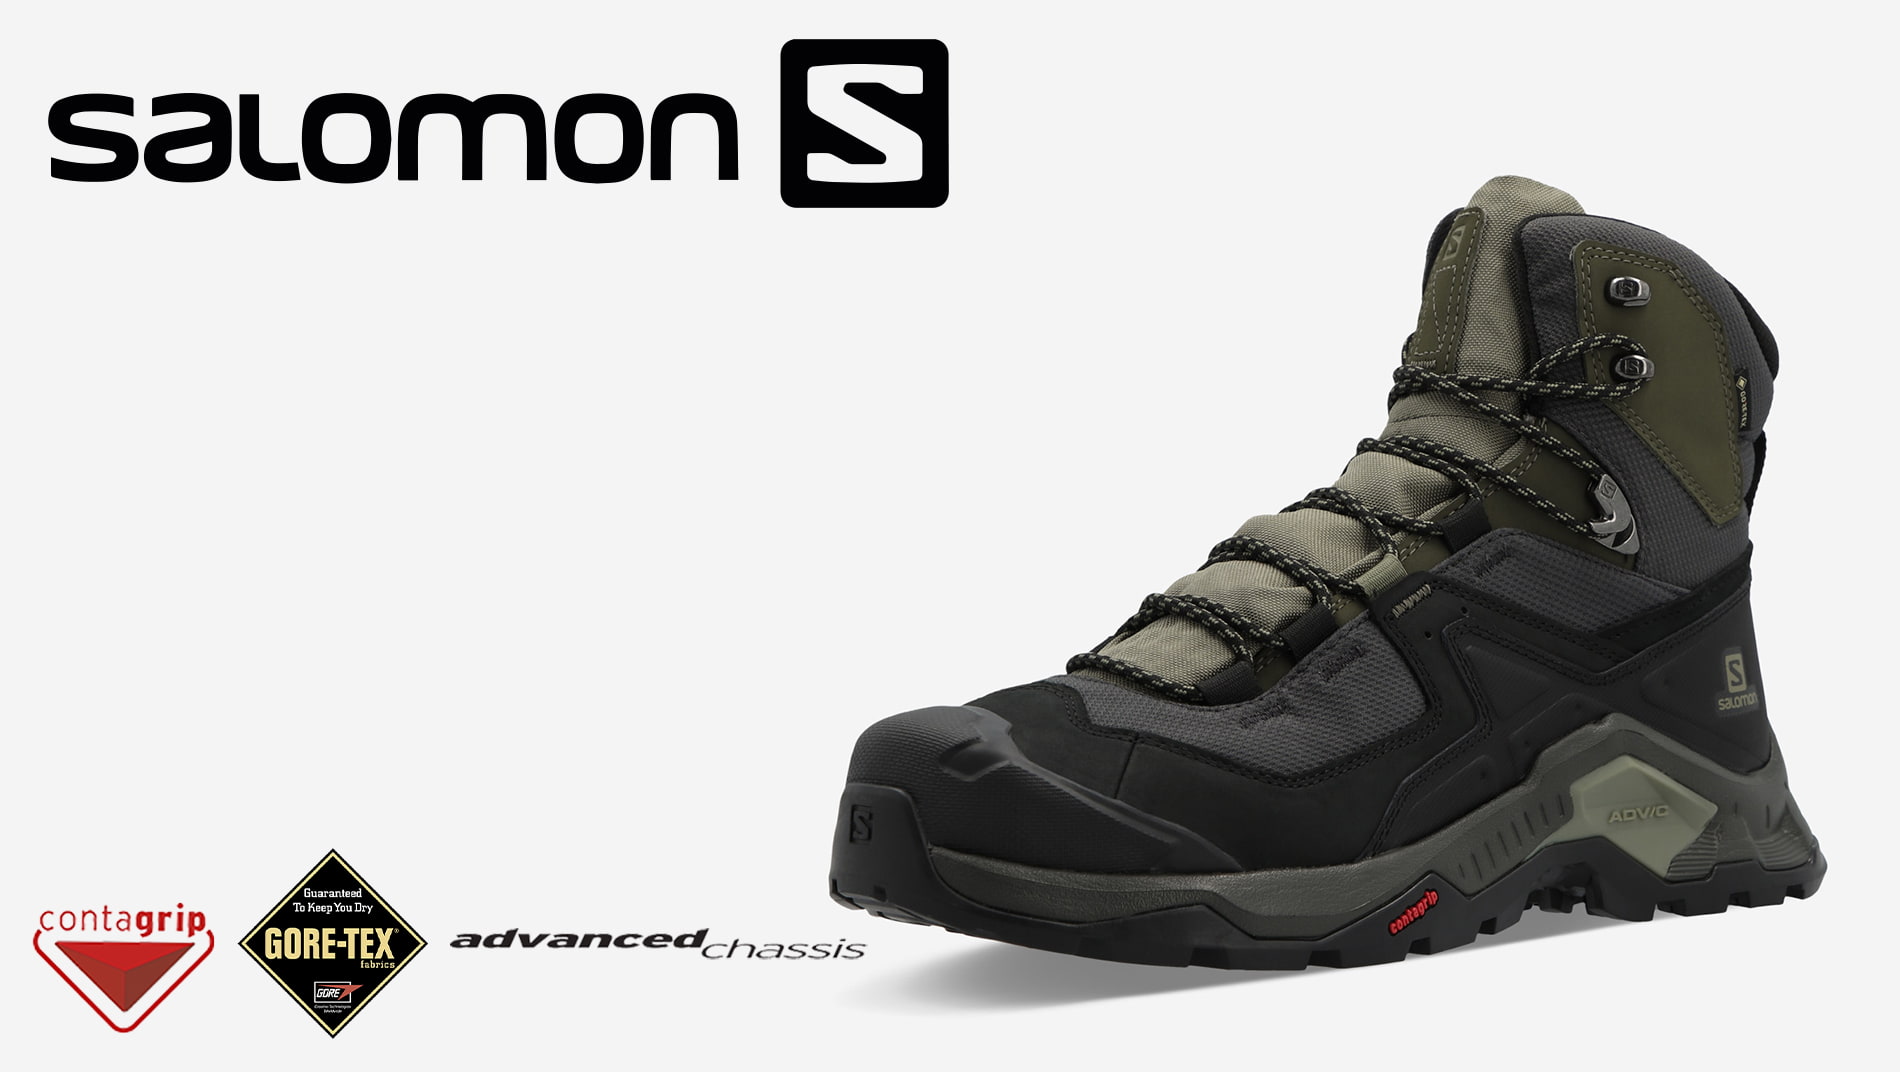 Ботинки мужские Salomon Quest Element GTX черный/оливковый цвет — купить за35999 руб., отзывы в интернет-магазине Спортмастер